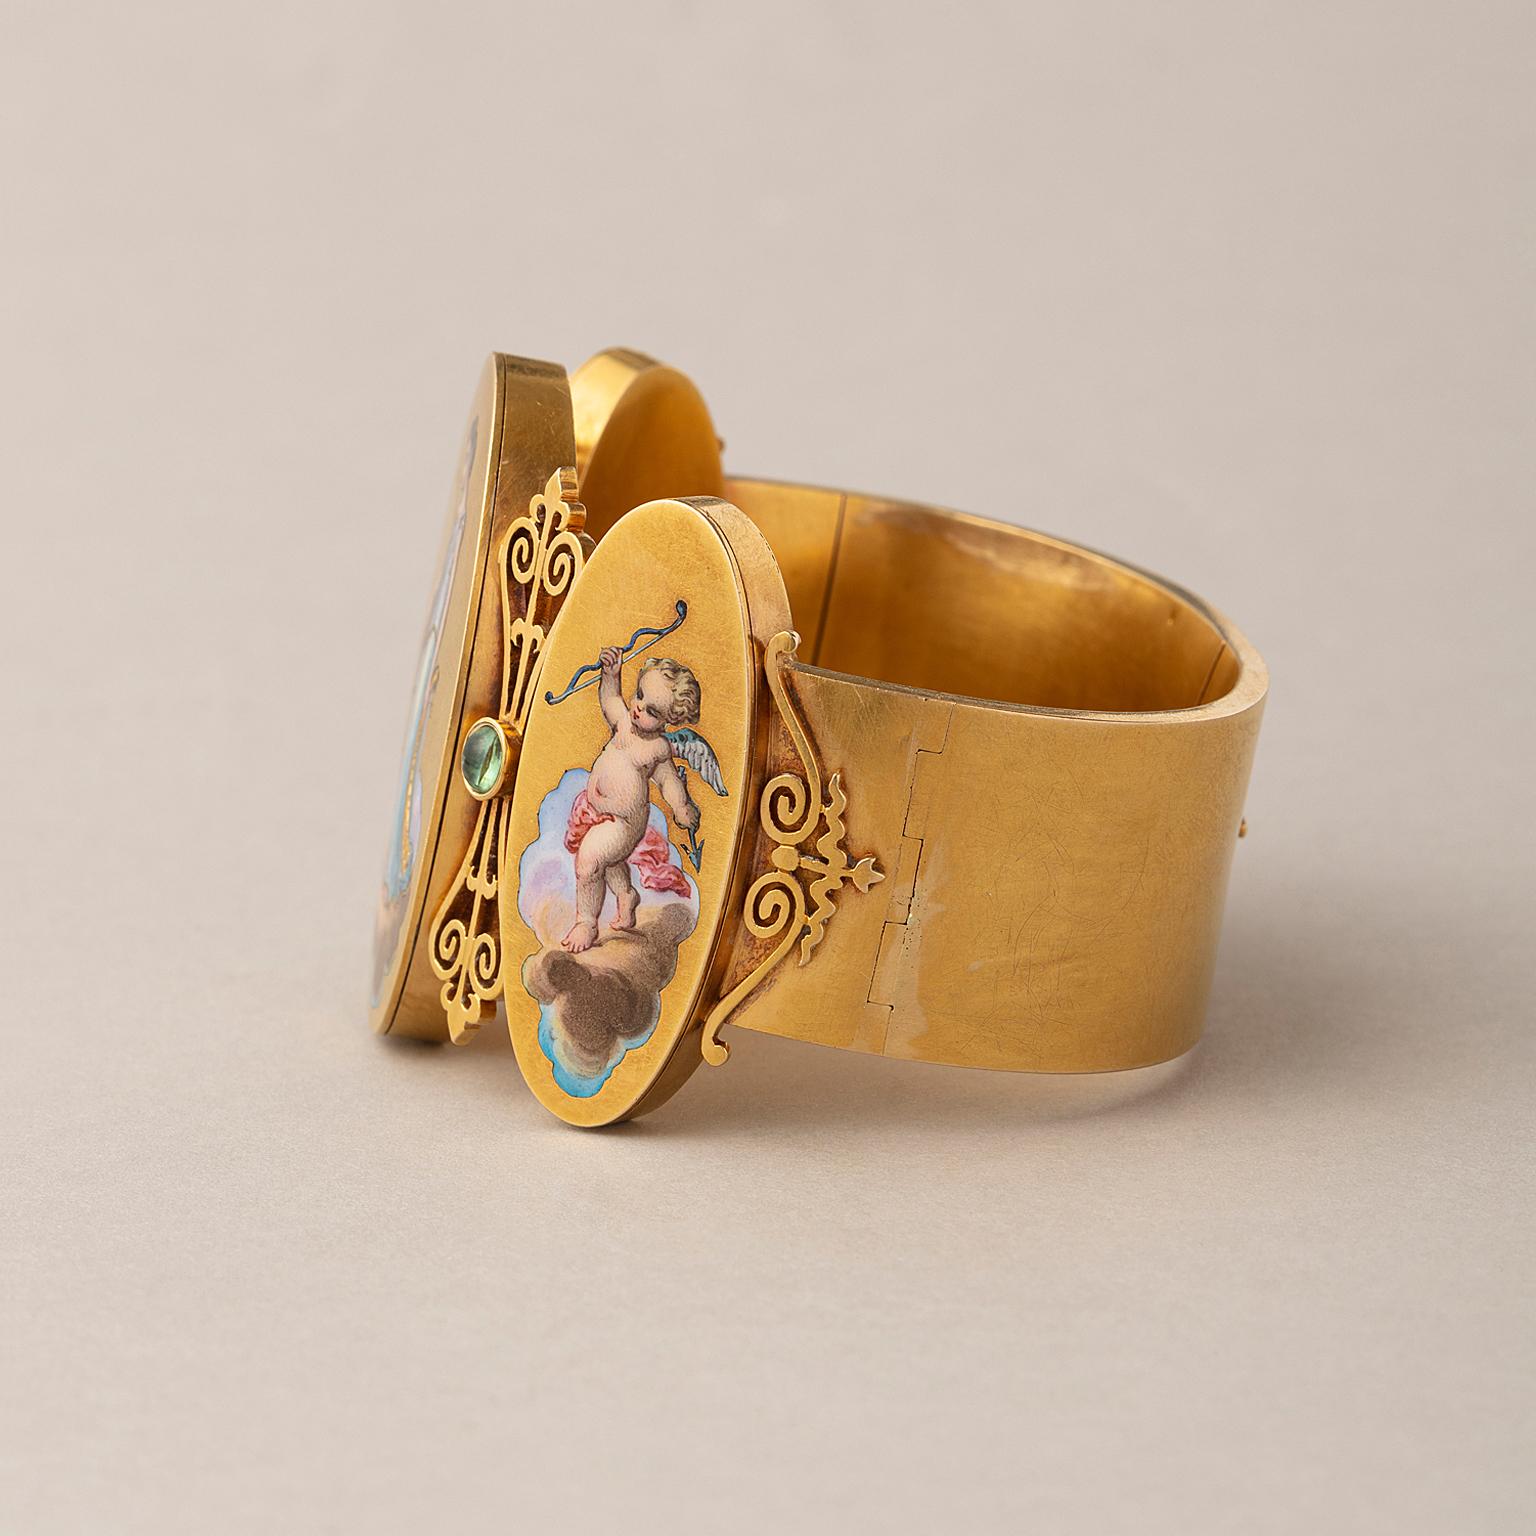 Breites Armband aus 18 Karat Gelbgold mit drei großen, ovalen Medaillons; das mittlere ist etwas größer und zeigt eine Muse in buntem Champlevé und gemaltem Email, flankiert von den kleineren Medaillons mit einer kleinen Putte und dazwischen ein